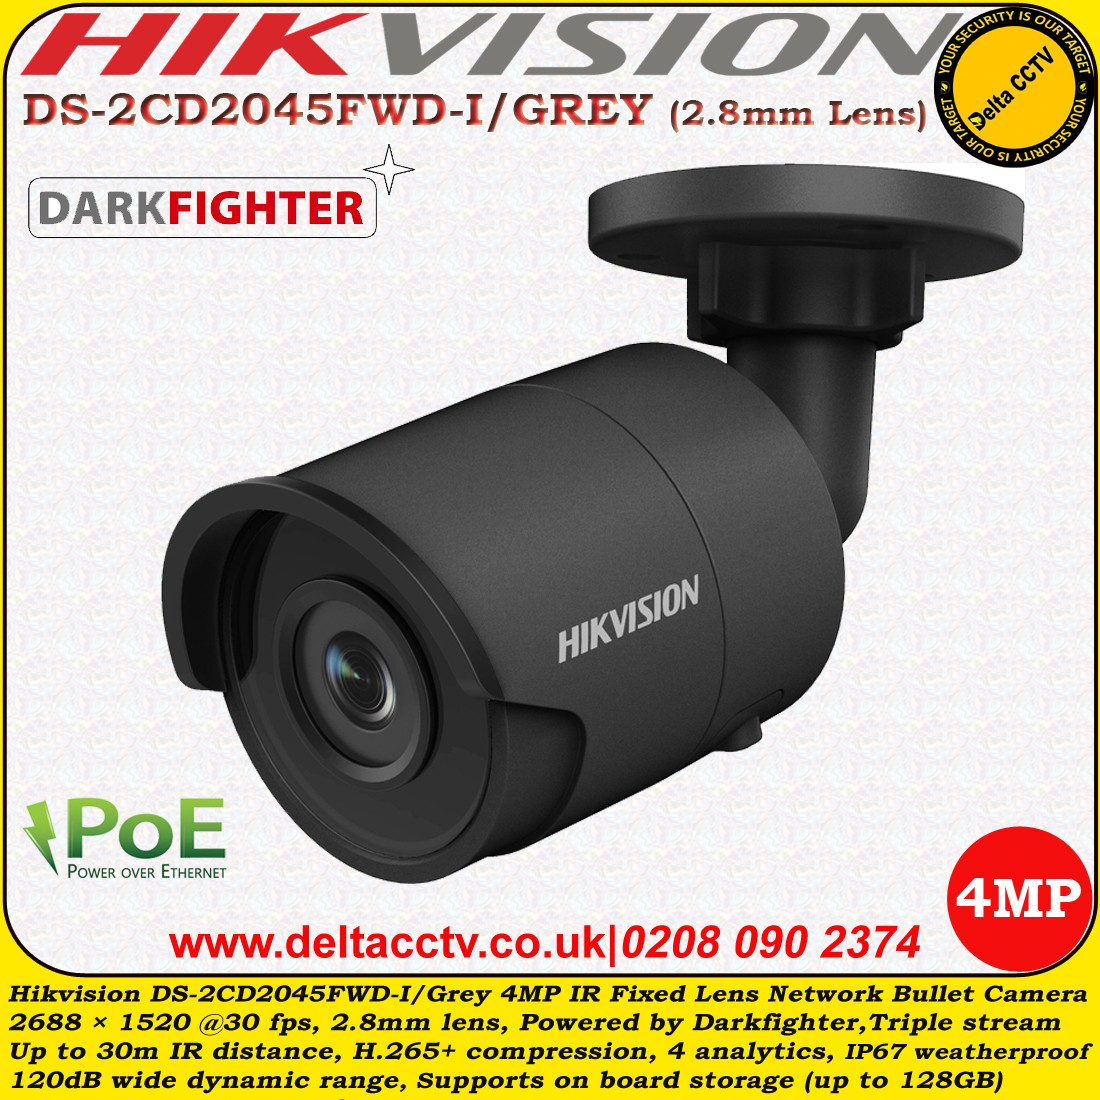 hikvision 4mp darkfighter bullet camera